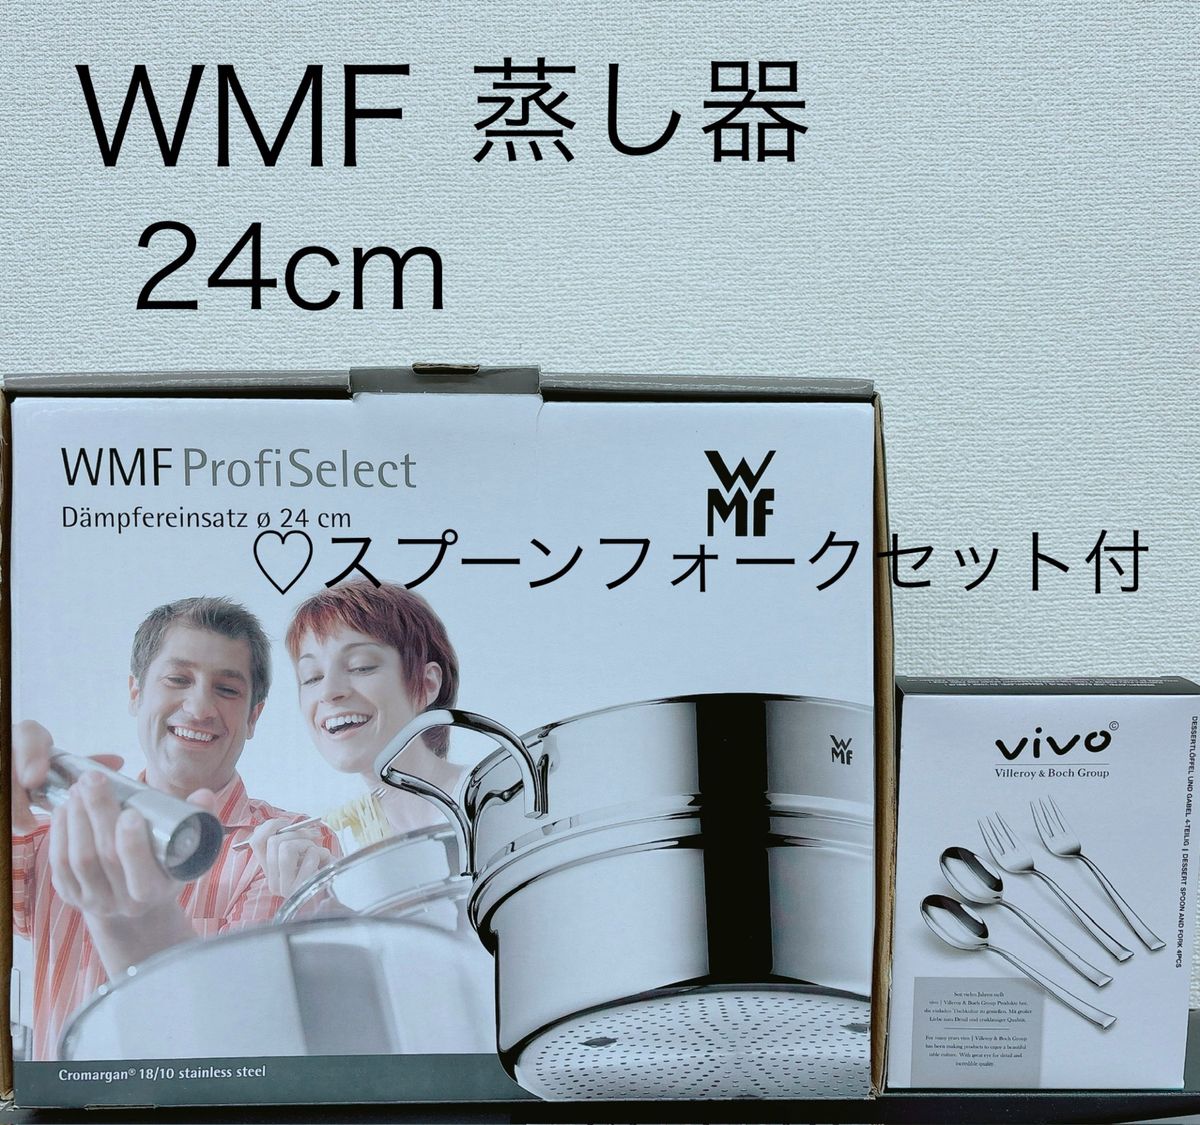 【新品未使用】WMF ProfiSelect 24cm スチーマー 両手蒸し器 スプーンフォーク4点セット付き